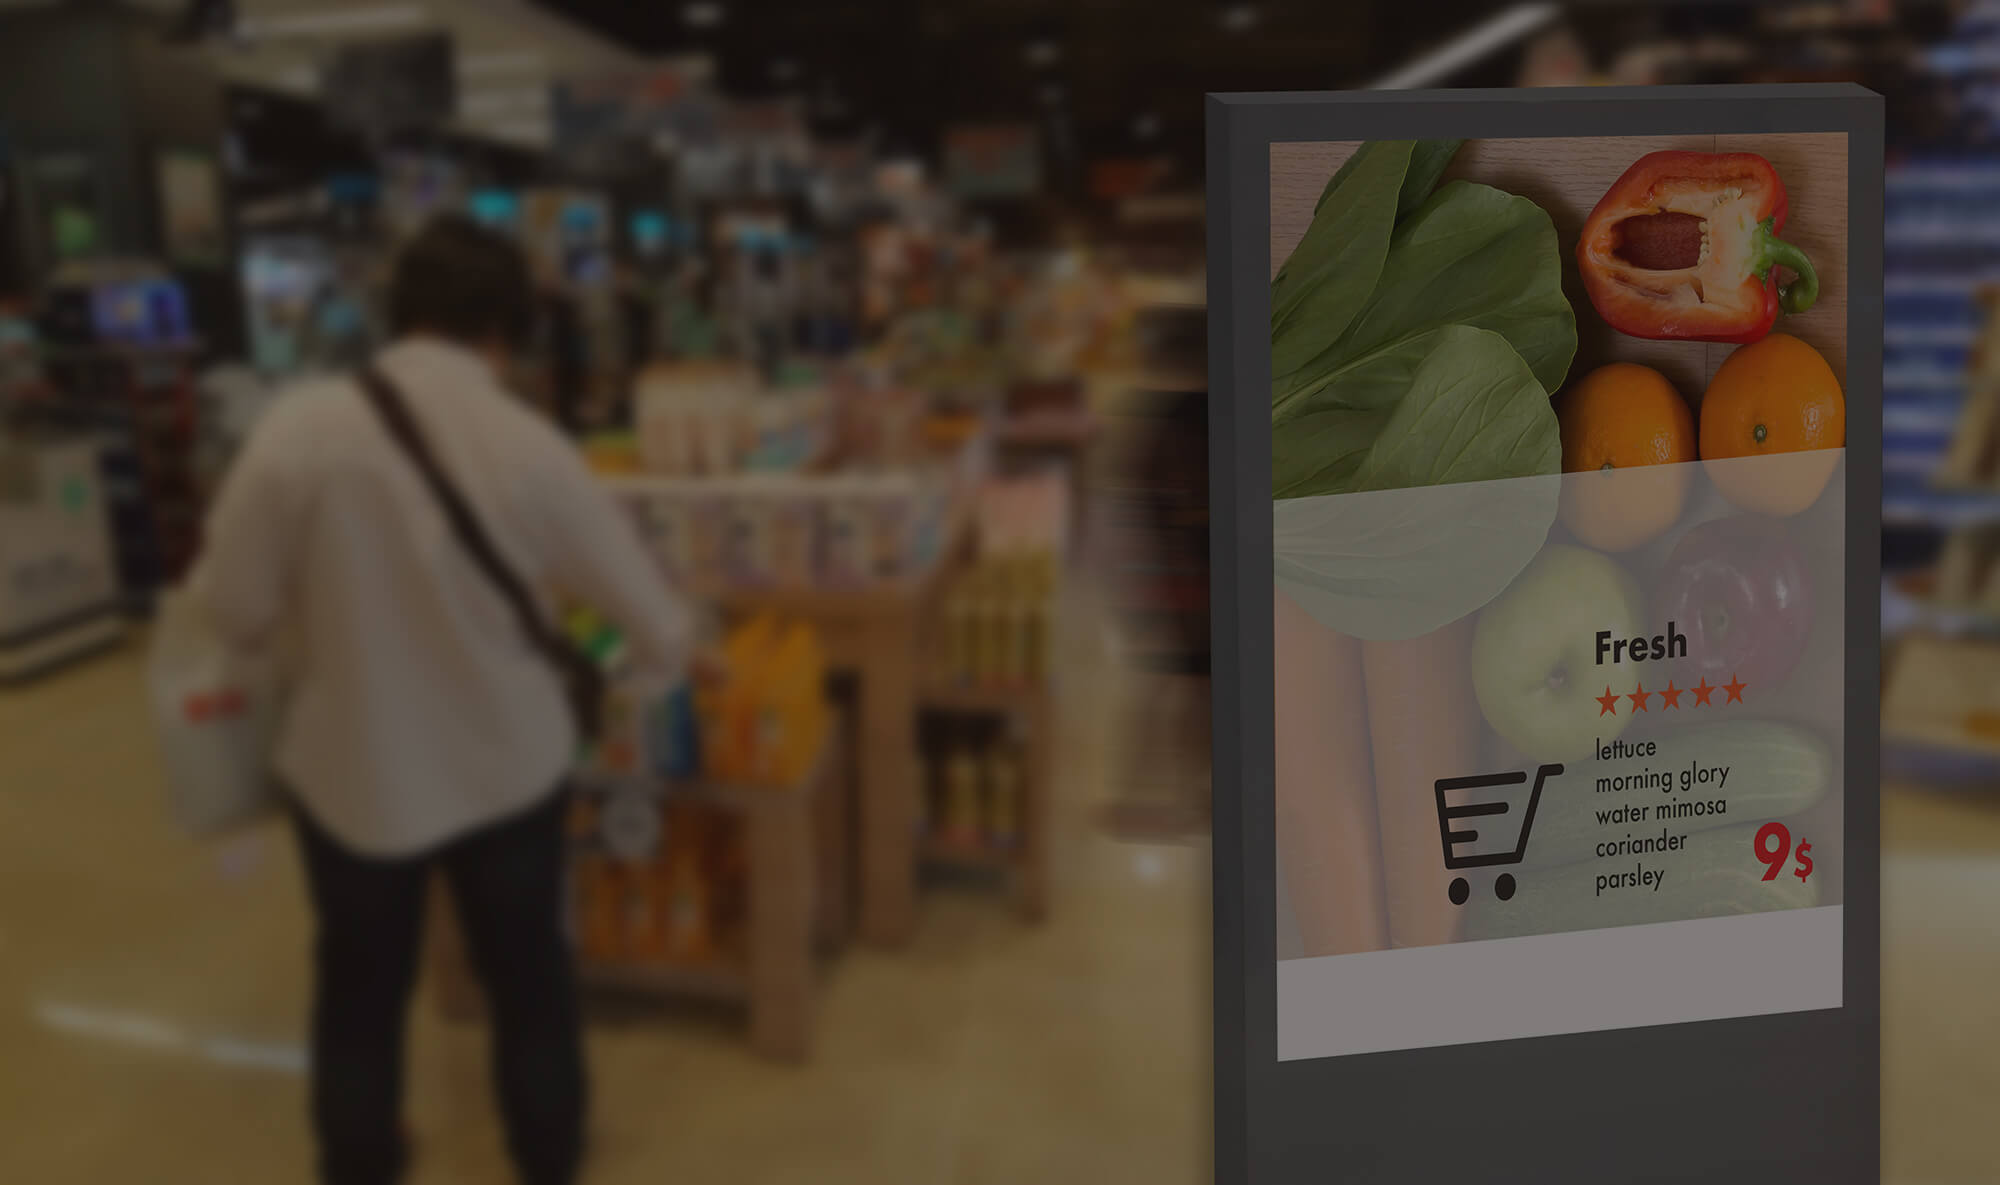 השימוש בשילוט דיגיטלי בחנויות ובמרכז קניות שכונתיים מהווה מהפכה ירוקה